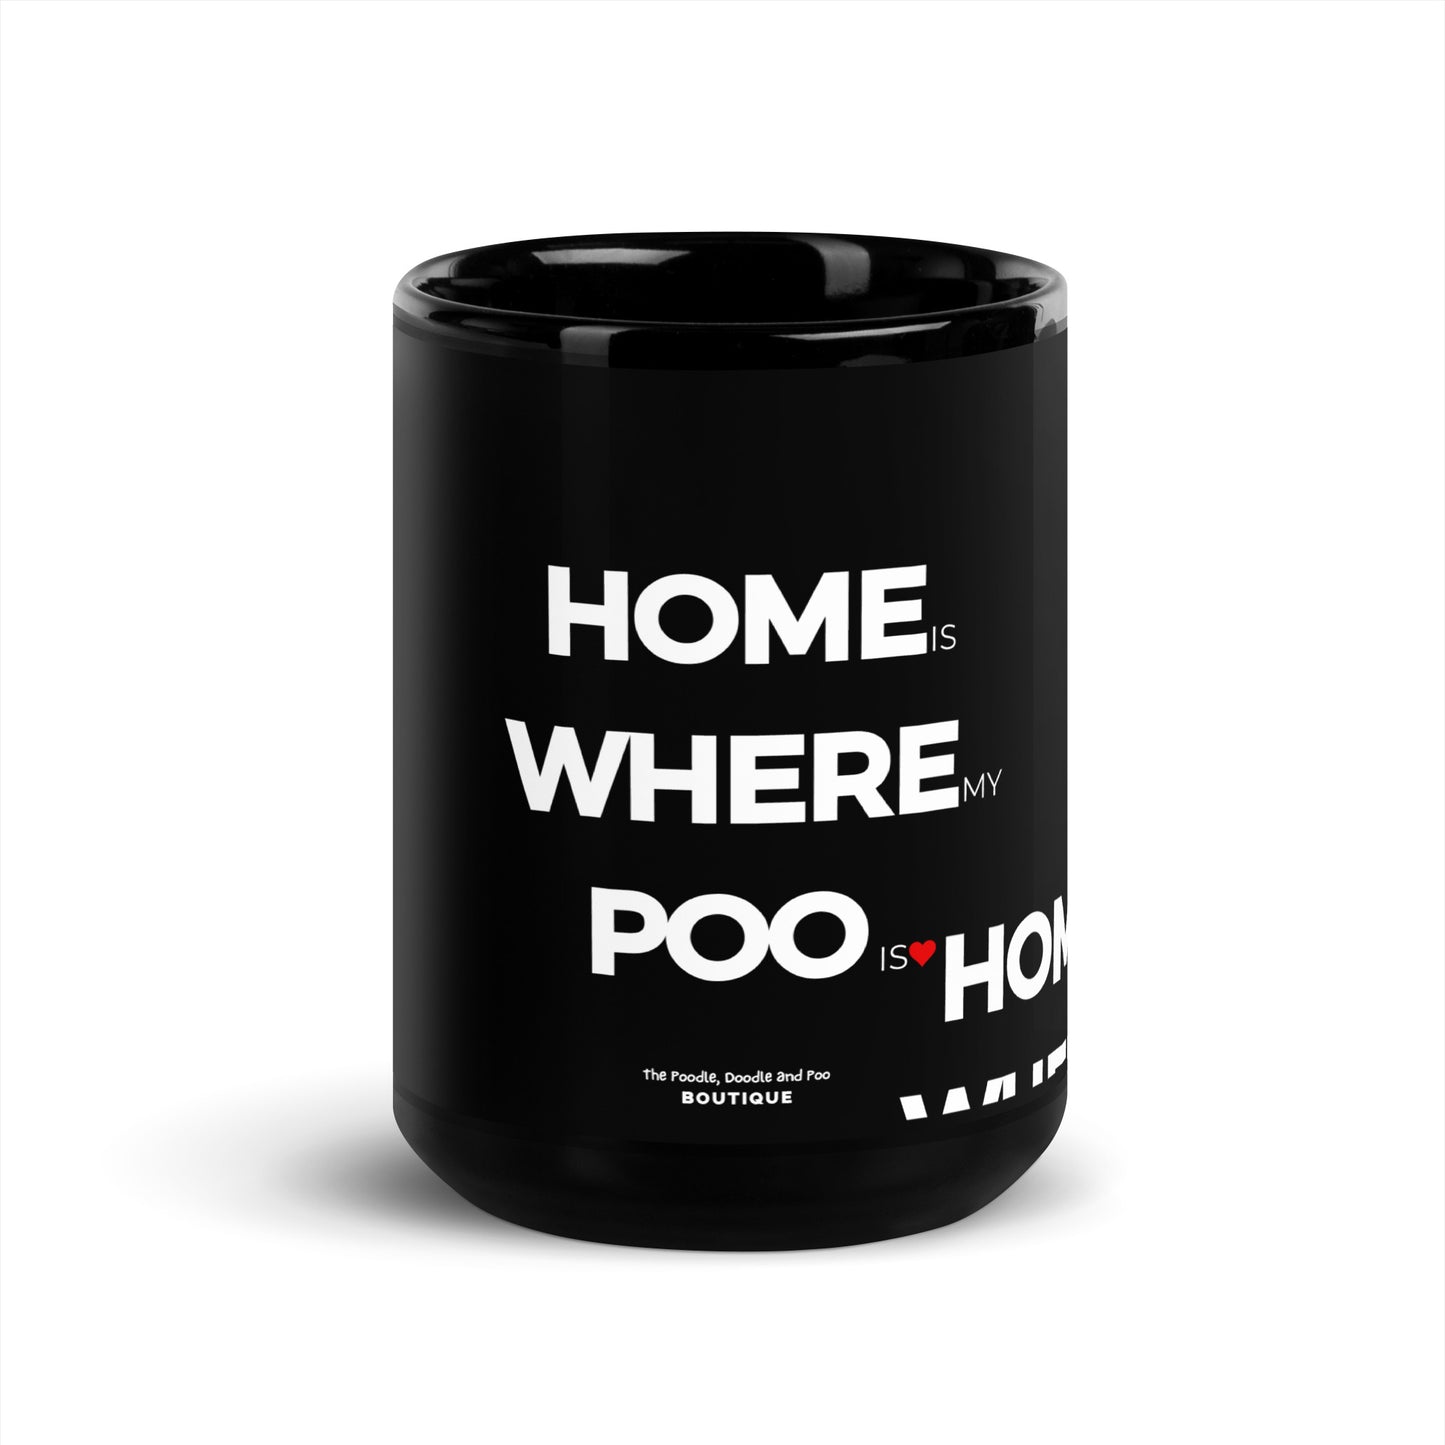 "Home is where my Poo is" Black Glossy Mug